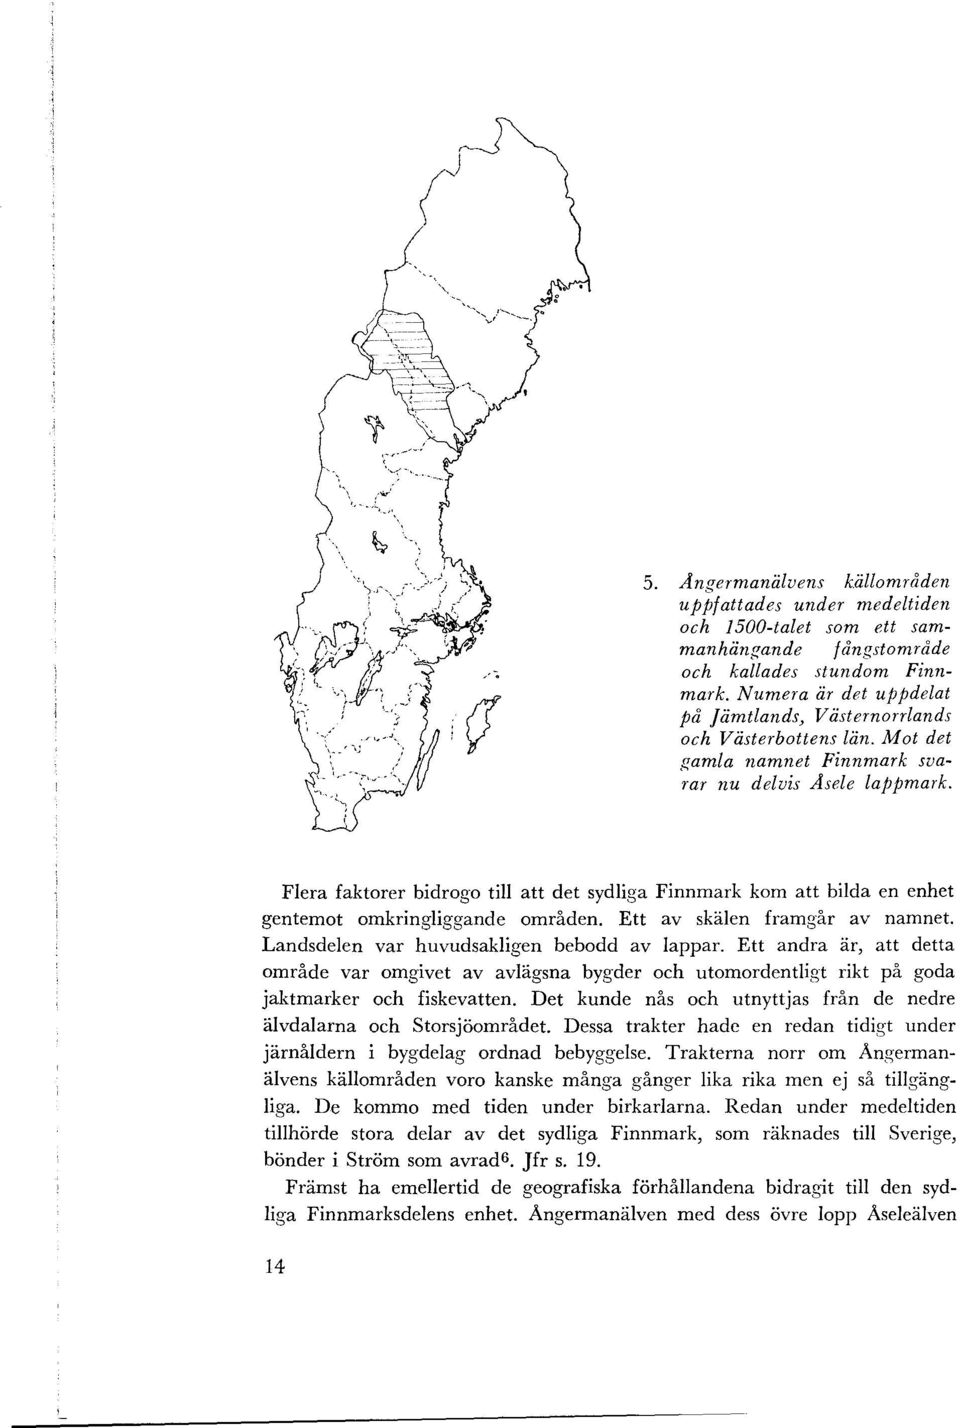 Flera faktorer bidraga till att det sydliga Finnmark kom att bilda en enhet gentemot omkringliggande områden. Ett av skälen framgår av namnet. Landsdelen var huvudsakligen bebodd av lappar.